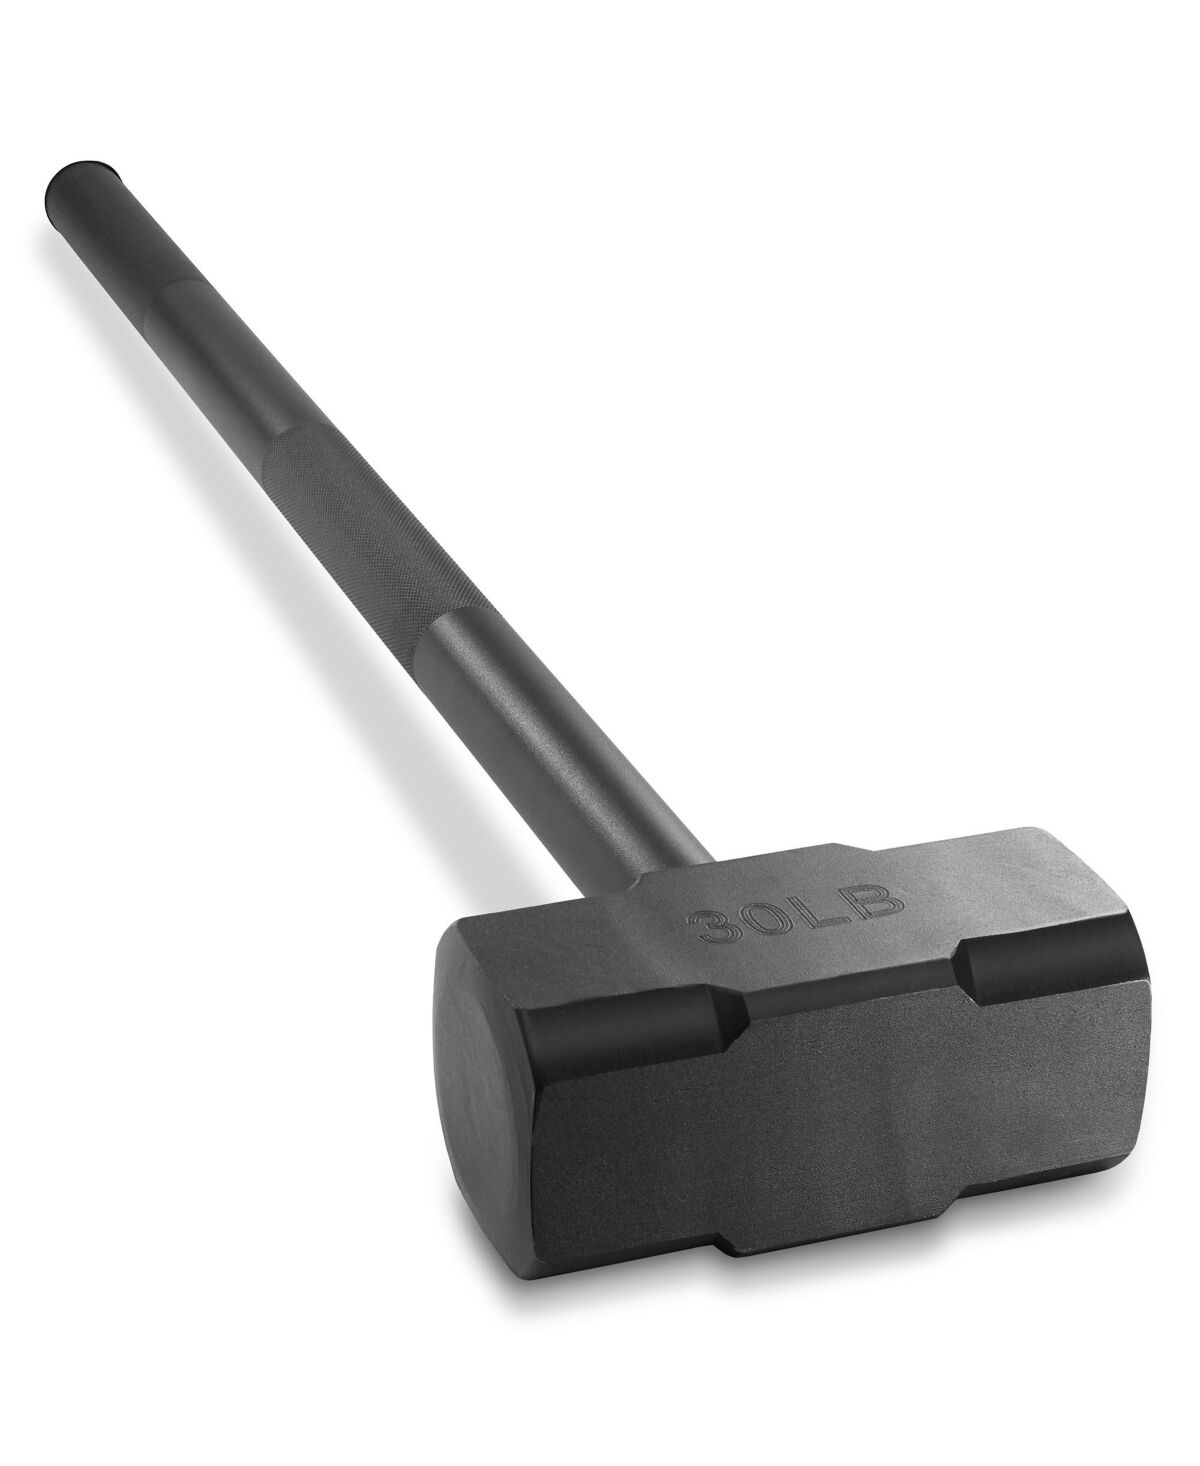 Philosophy Gym Fitness Hammer, 30 Lb - Steel Hammer for Strength Training - Black